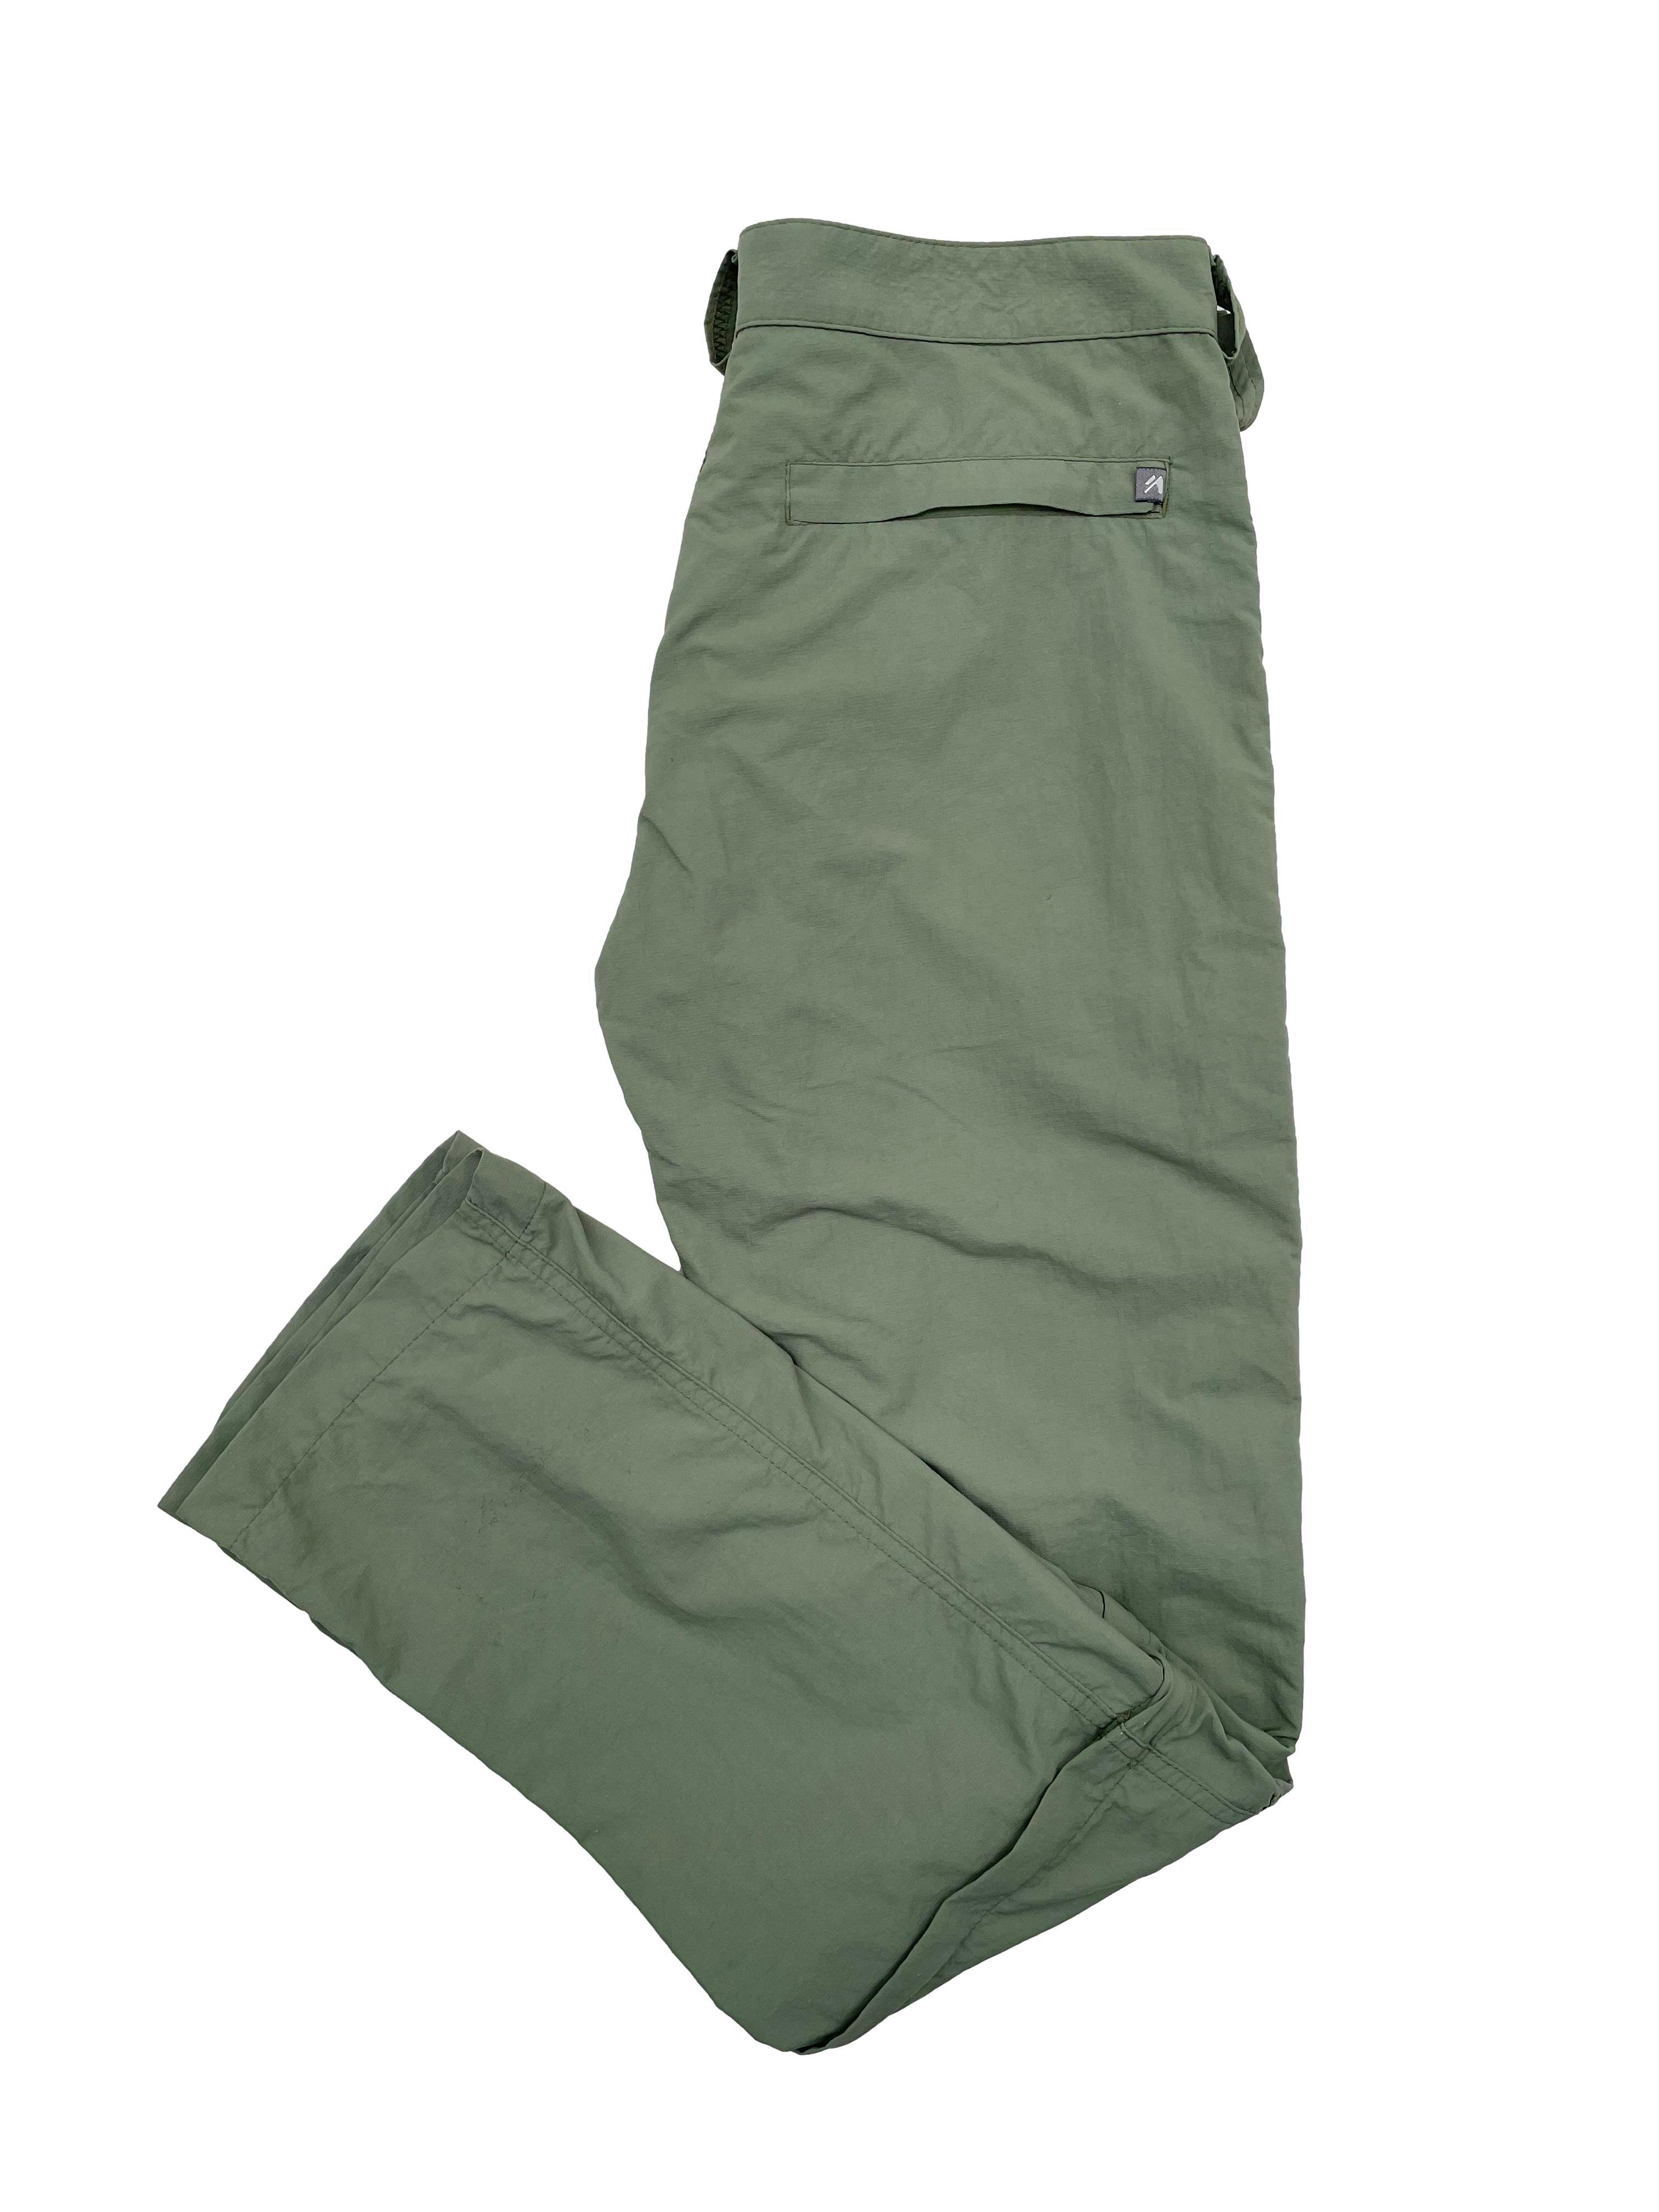 Pantalón outdoor Tatoo verde militar, se convierte en short, de tiro medio con bolsillos frontales sin cierre, un bolsillo posterior y uno lateral con cierre. Precio original S/290. Cintura 76cm, Largo 100cm.